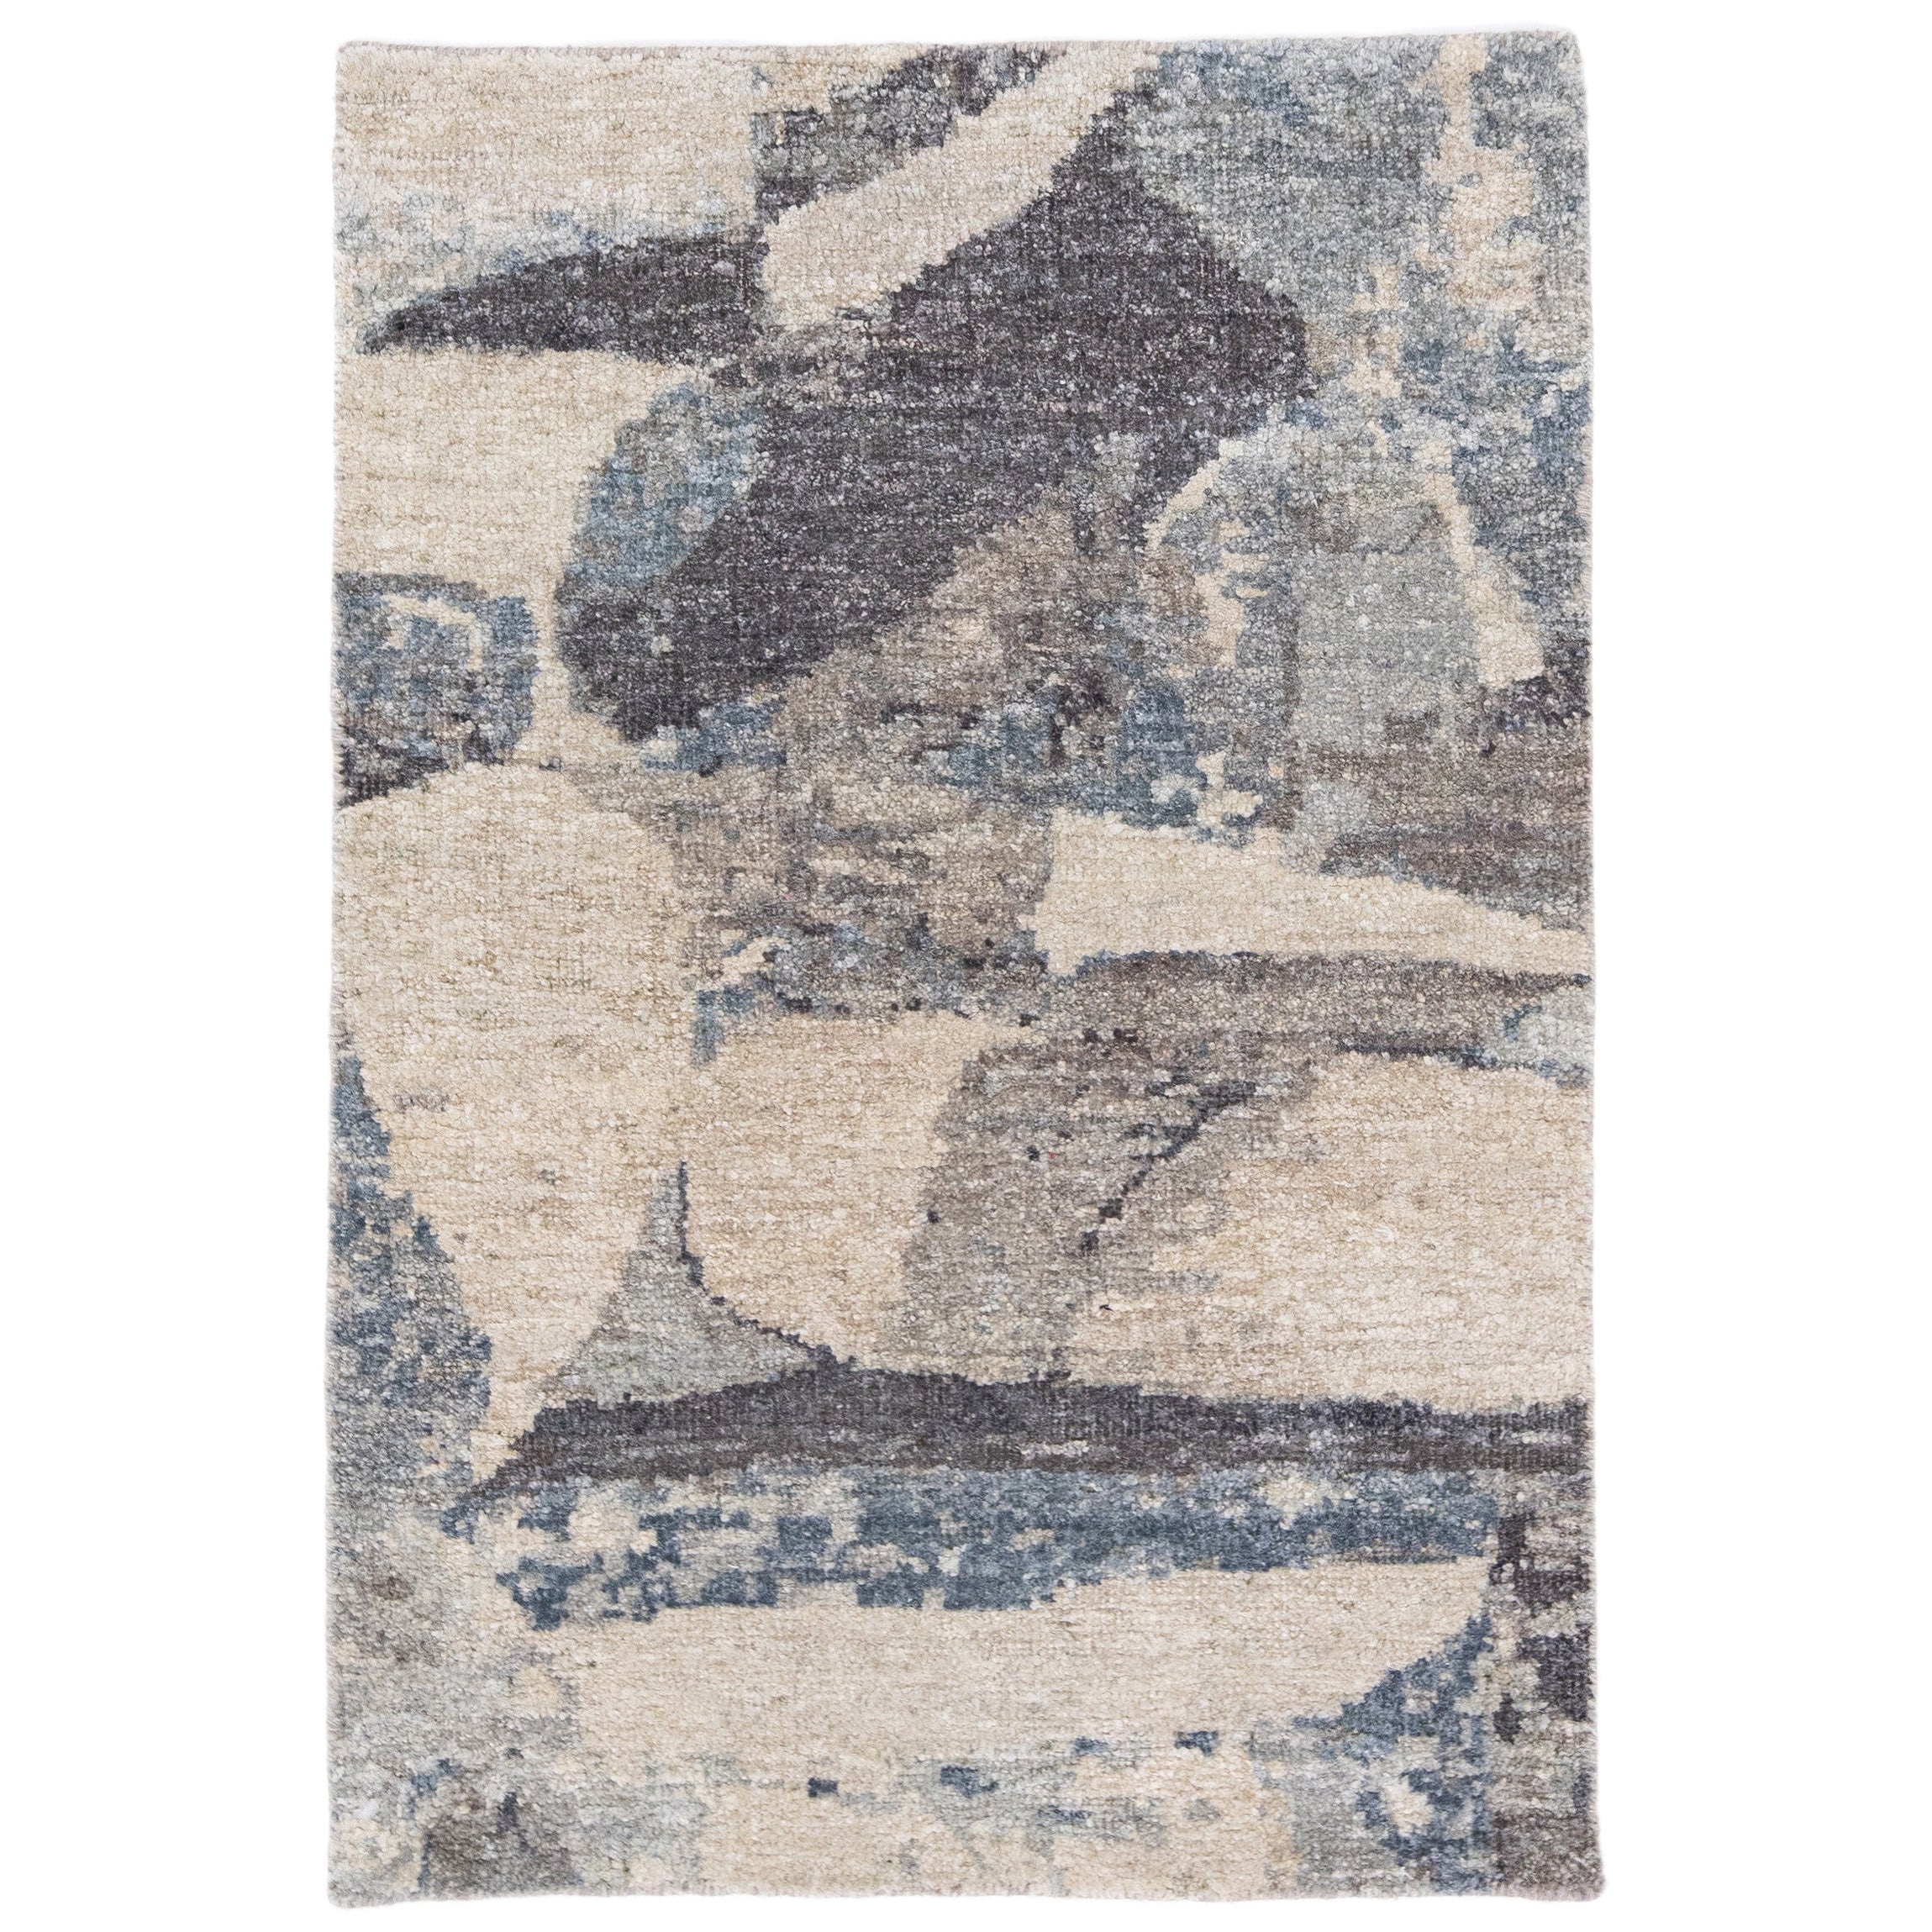 Moderner moderner handgefertigter blau/grauer abstrakter Teppich aus Wolle und Seide